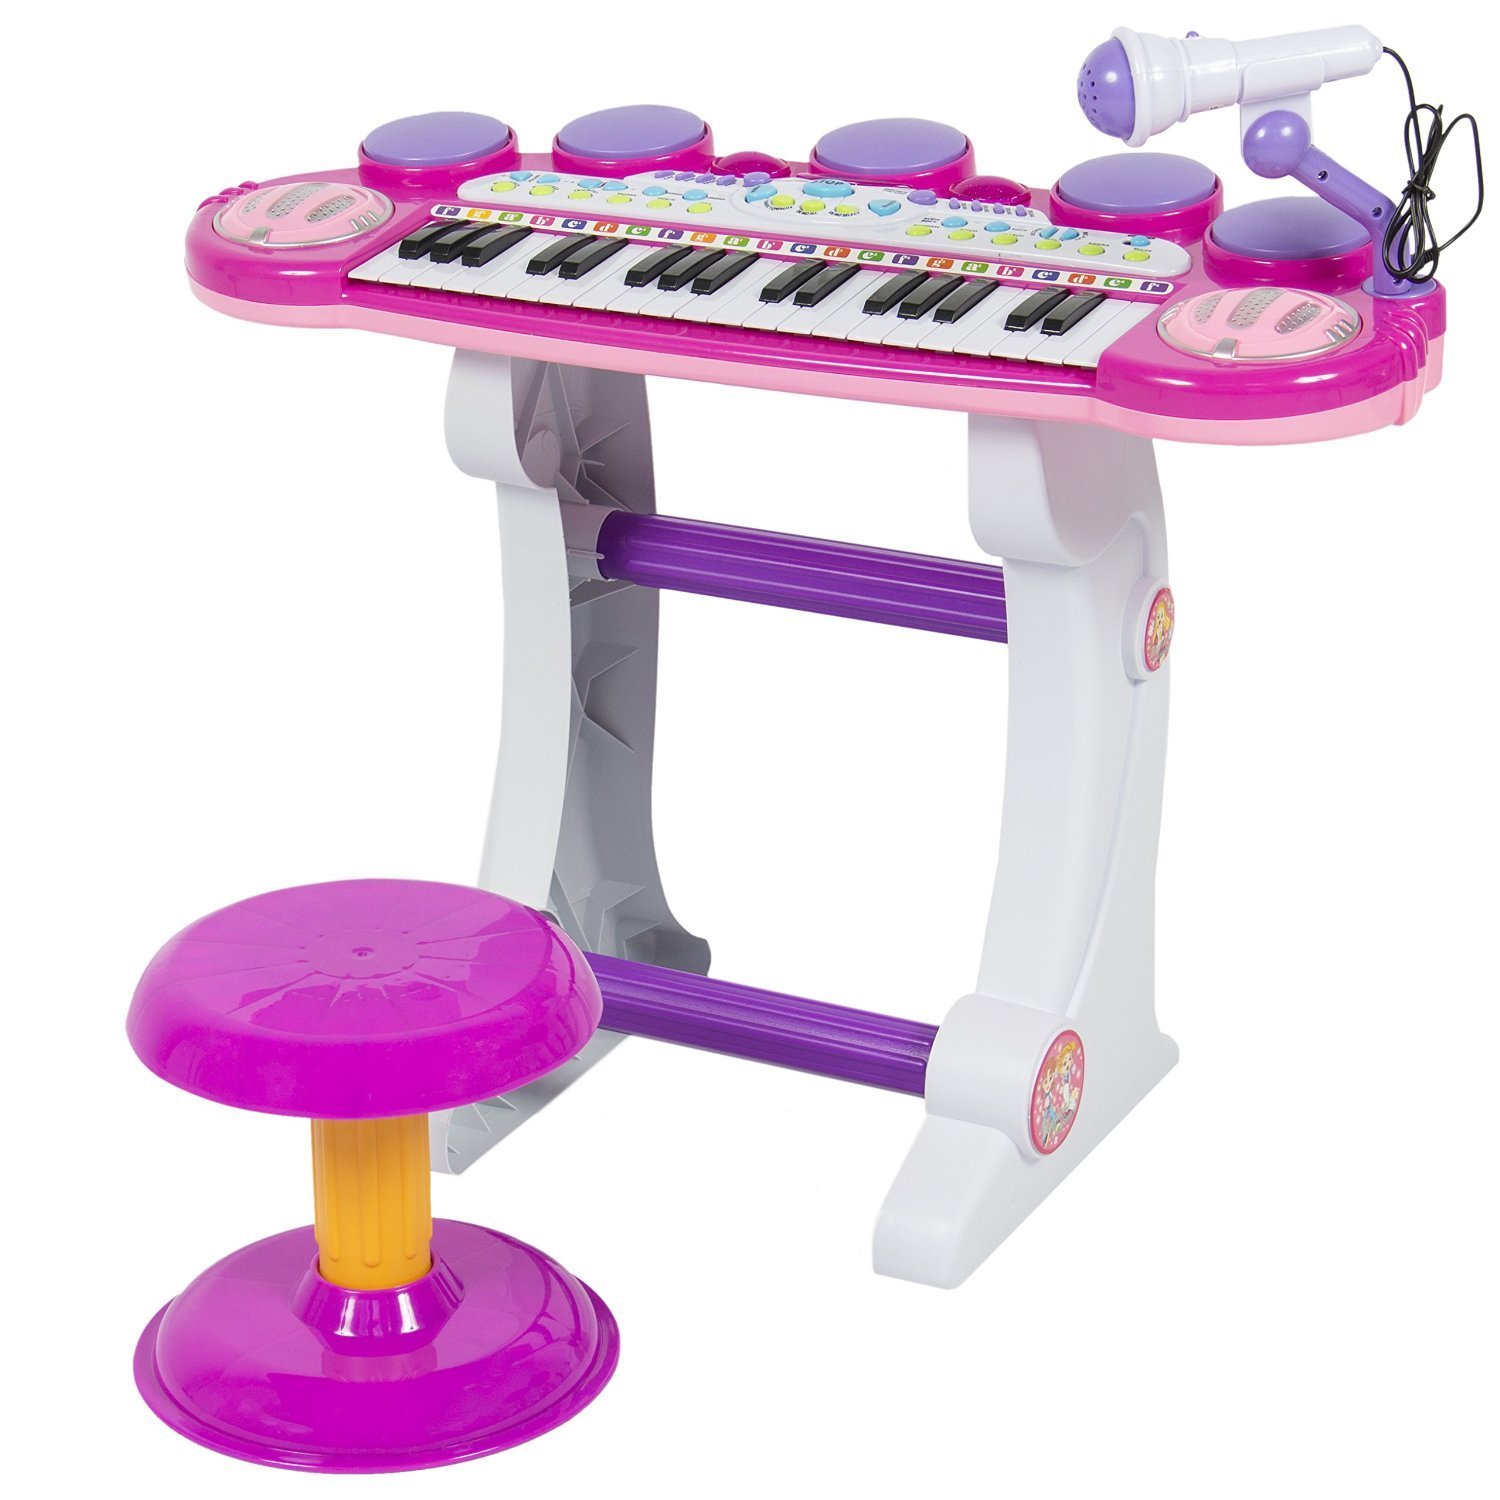 rockible Teclado infantil, piano de teclado infantil, brinquedo musical  multifuncional de 37 teclas, ROSA